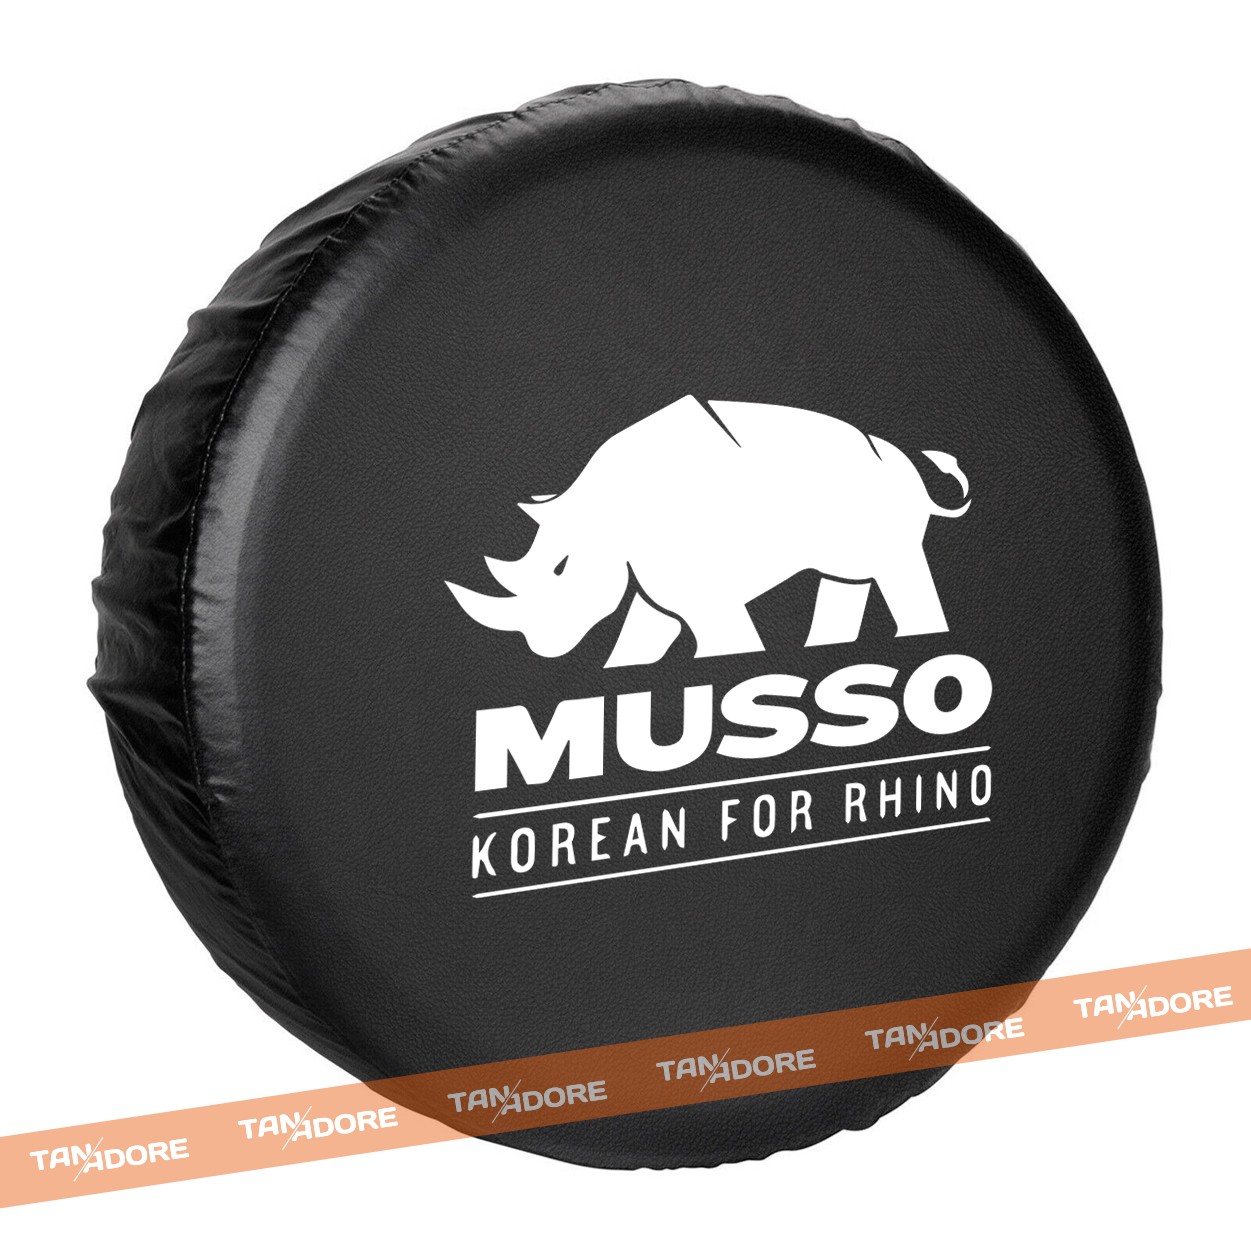 Musso Korean for Rhino Spare Wheel Tire Cover